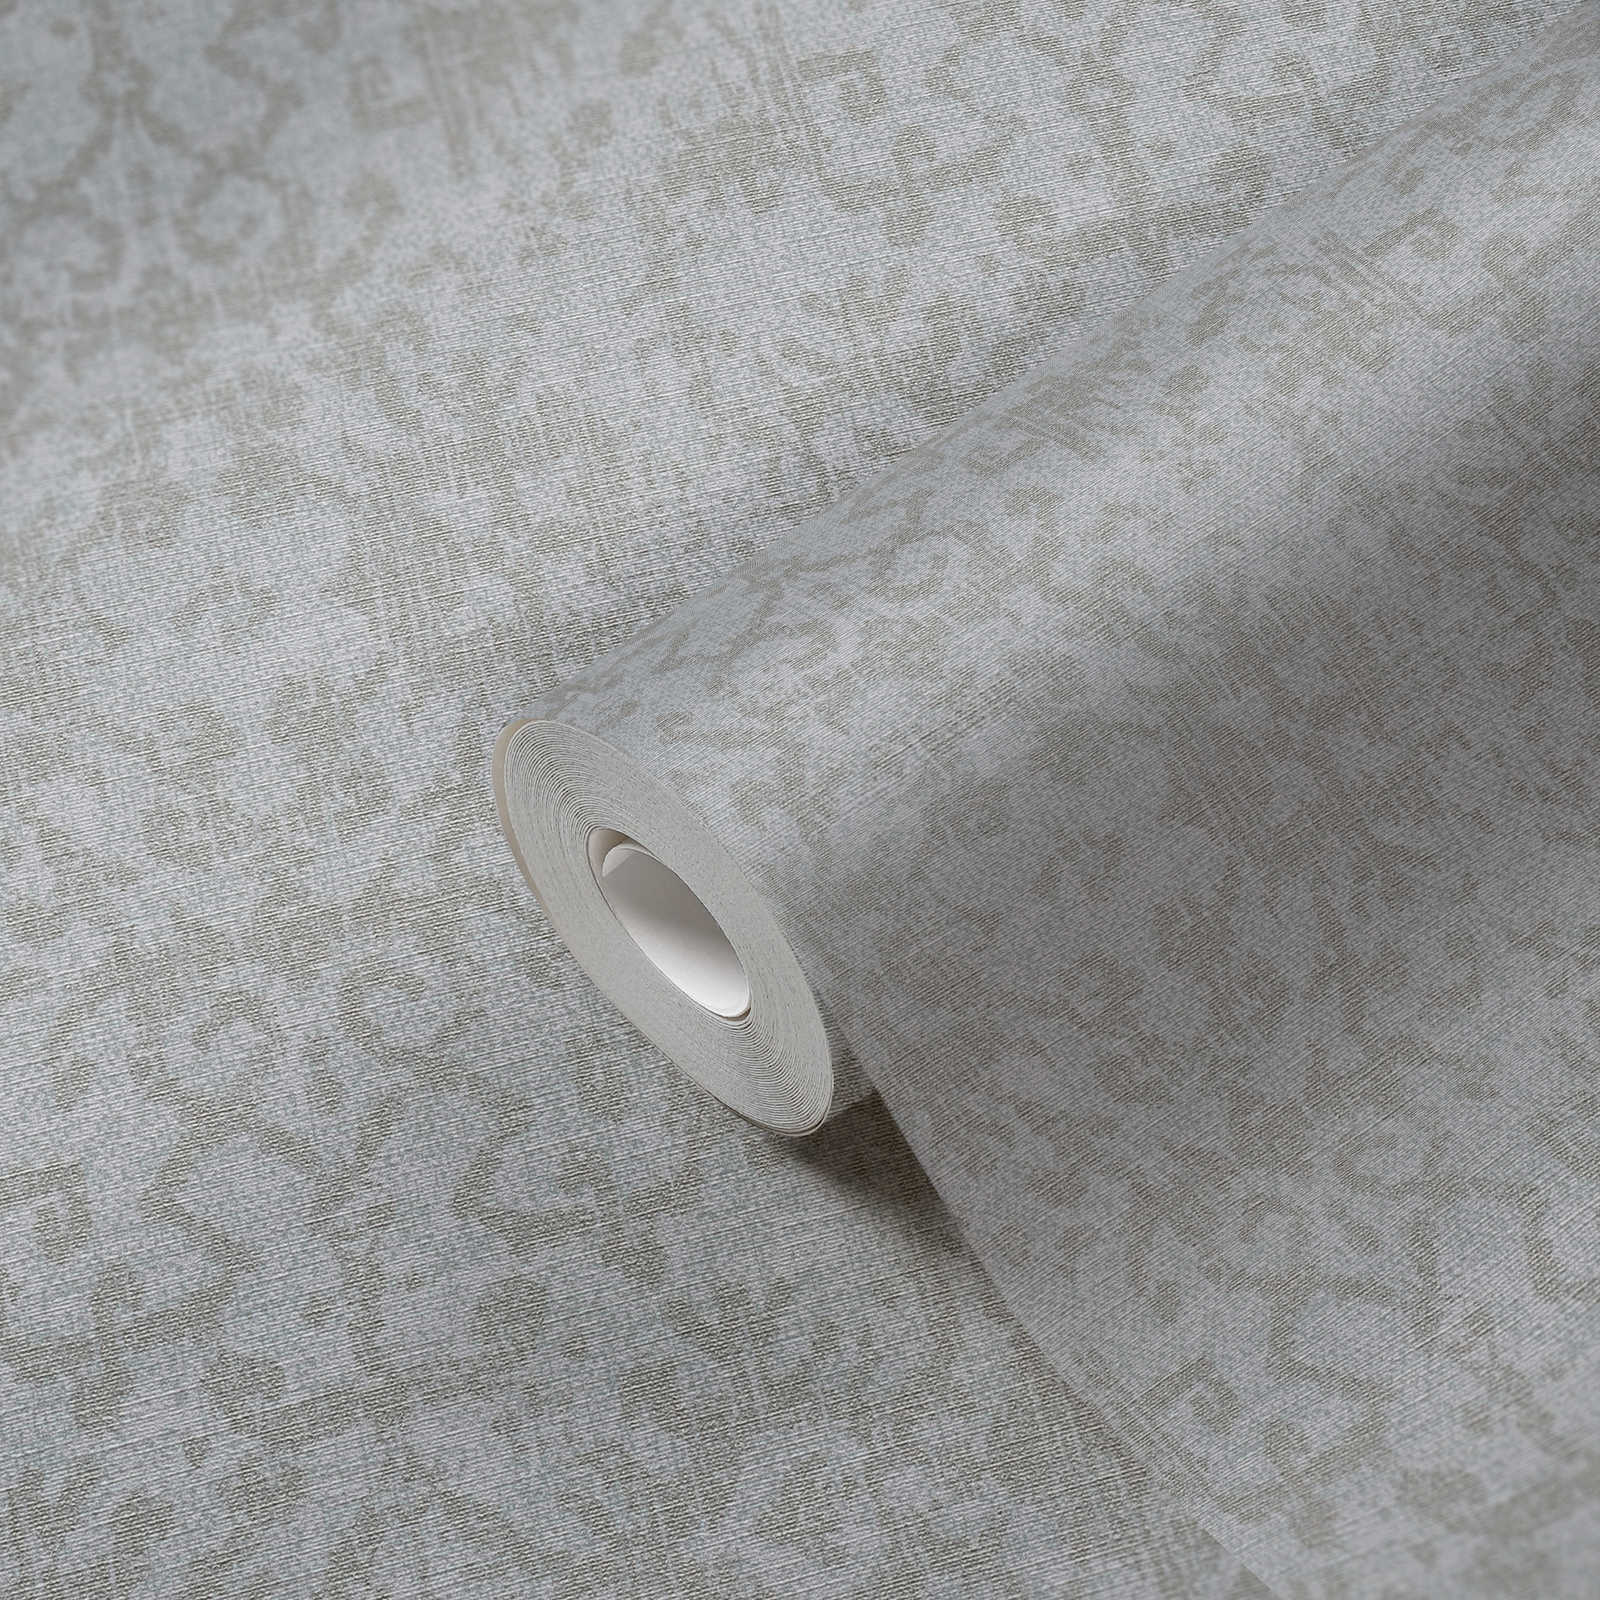             textiel optiek behang etnisch ornament patroon - grijs
        